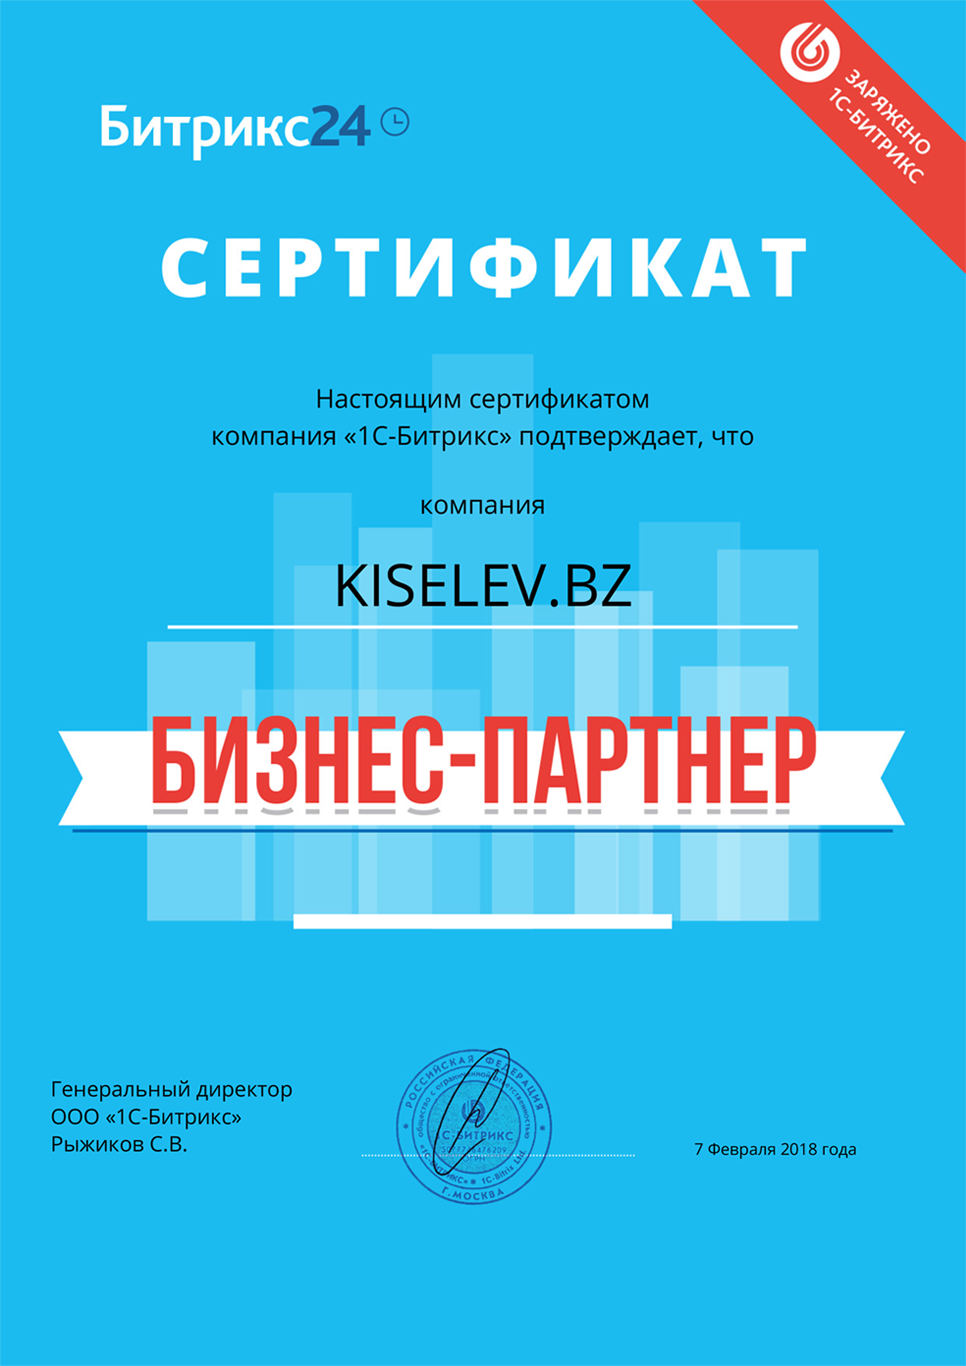 Сертификат партнёра по АМОСРМ в Ртищево